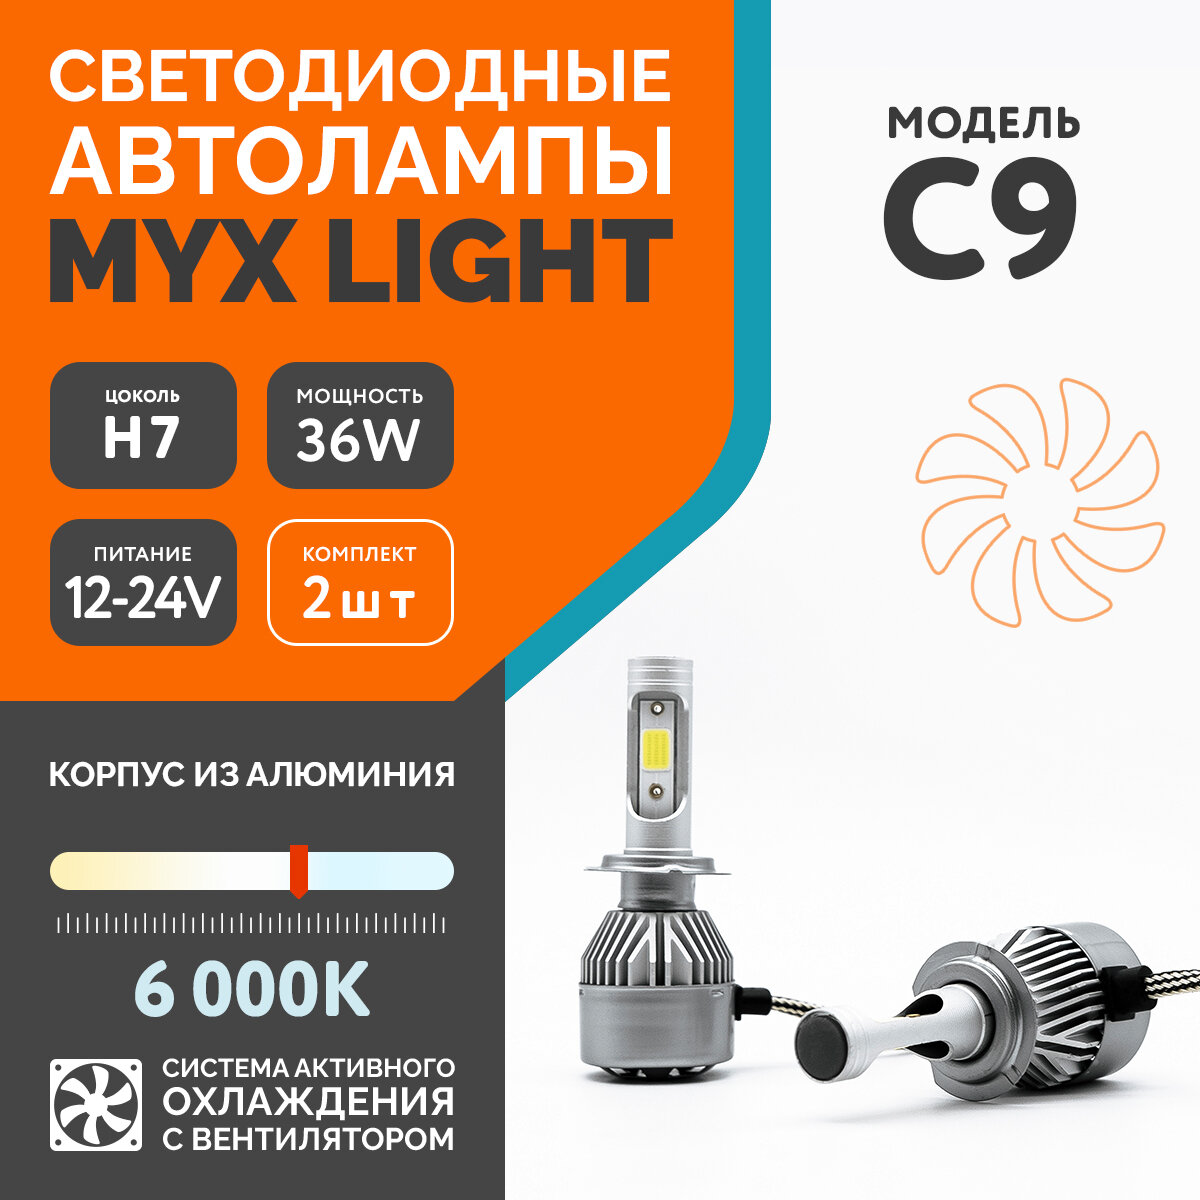 Светодиодные автомобильные лампы MYX Light C9, напряжение 12V, мощность 36W, LED чип COB с вентилятором, температура света 6000K, цоколь H7, 2 шт.